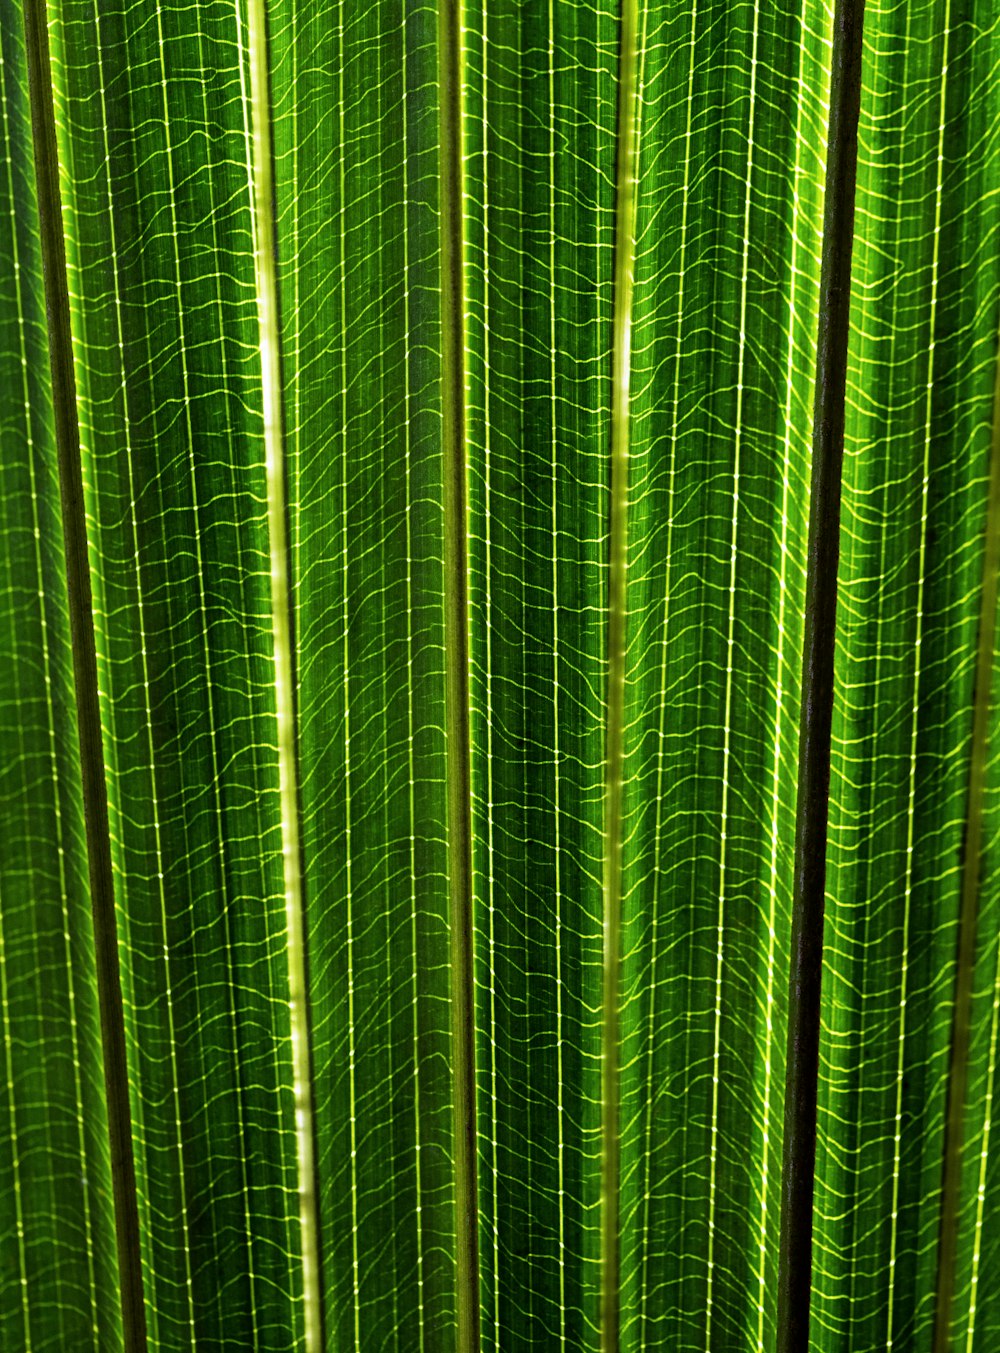 Eine Nahaufnahme eines grünen Blattes